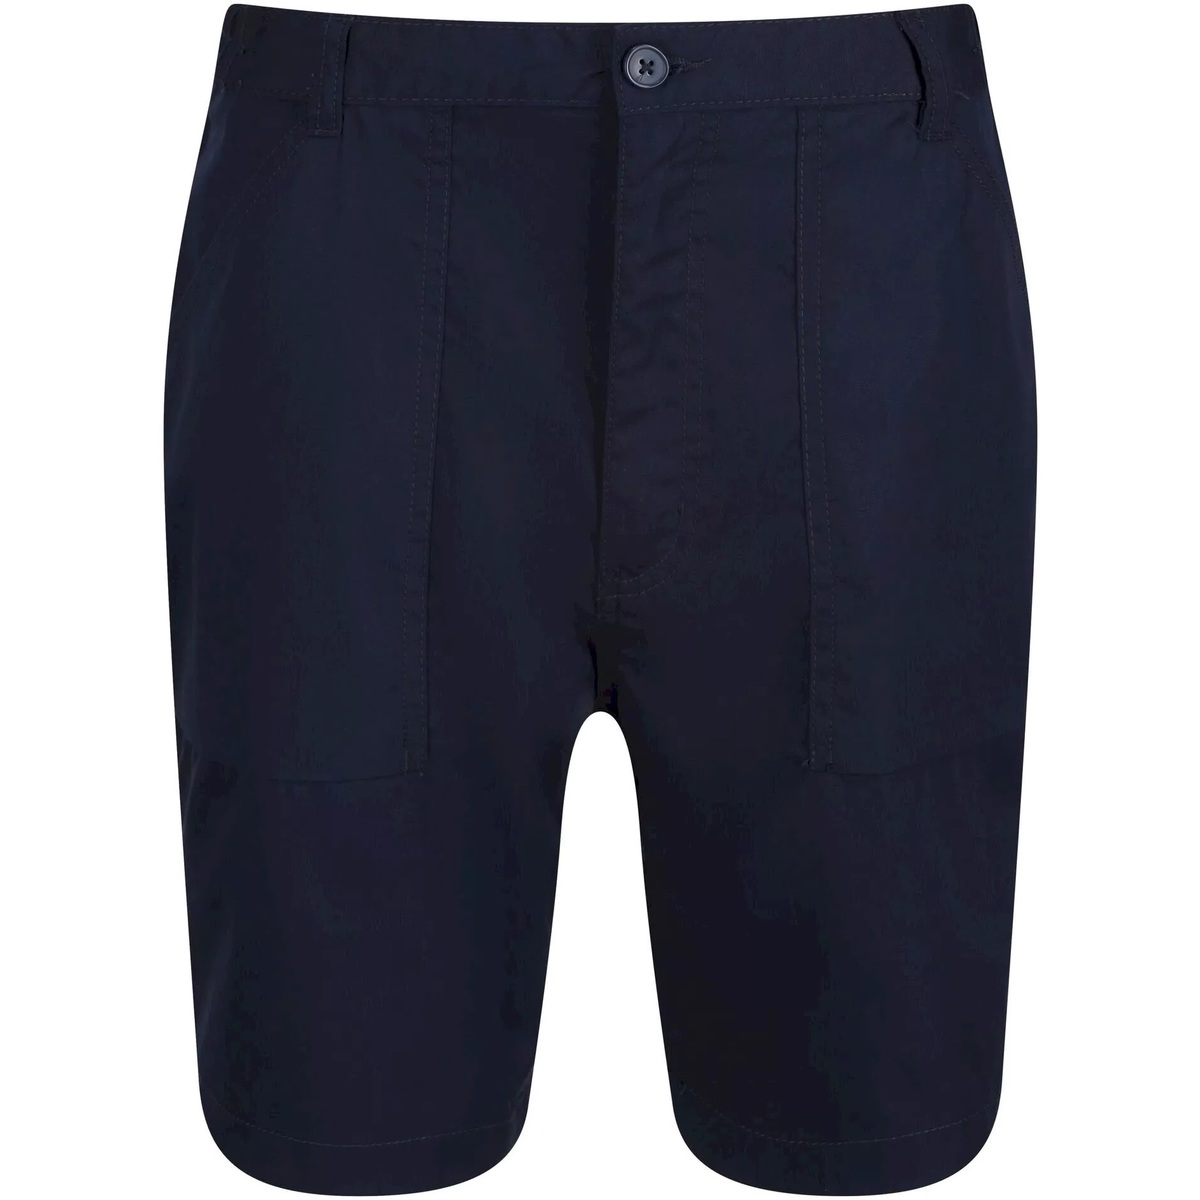 textil Hombre Shorts / Bermudas Regatta TRJ332 Azul